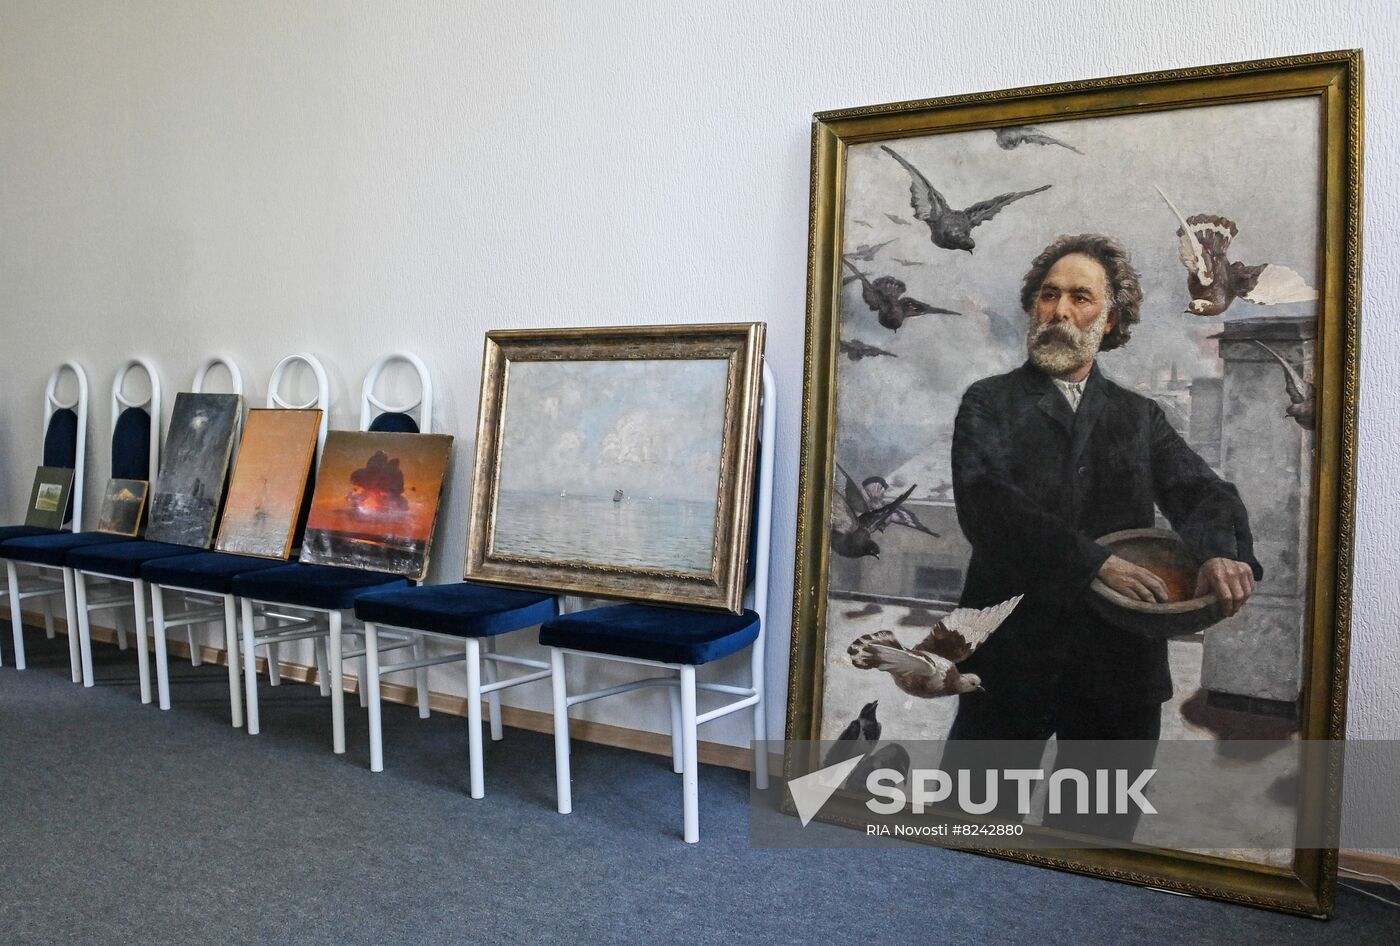 DPR Mariupol Museum Exhibits